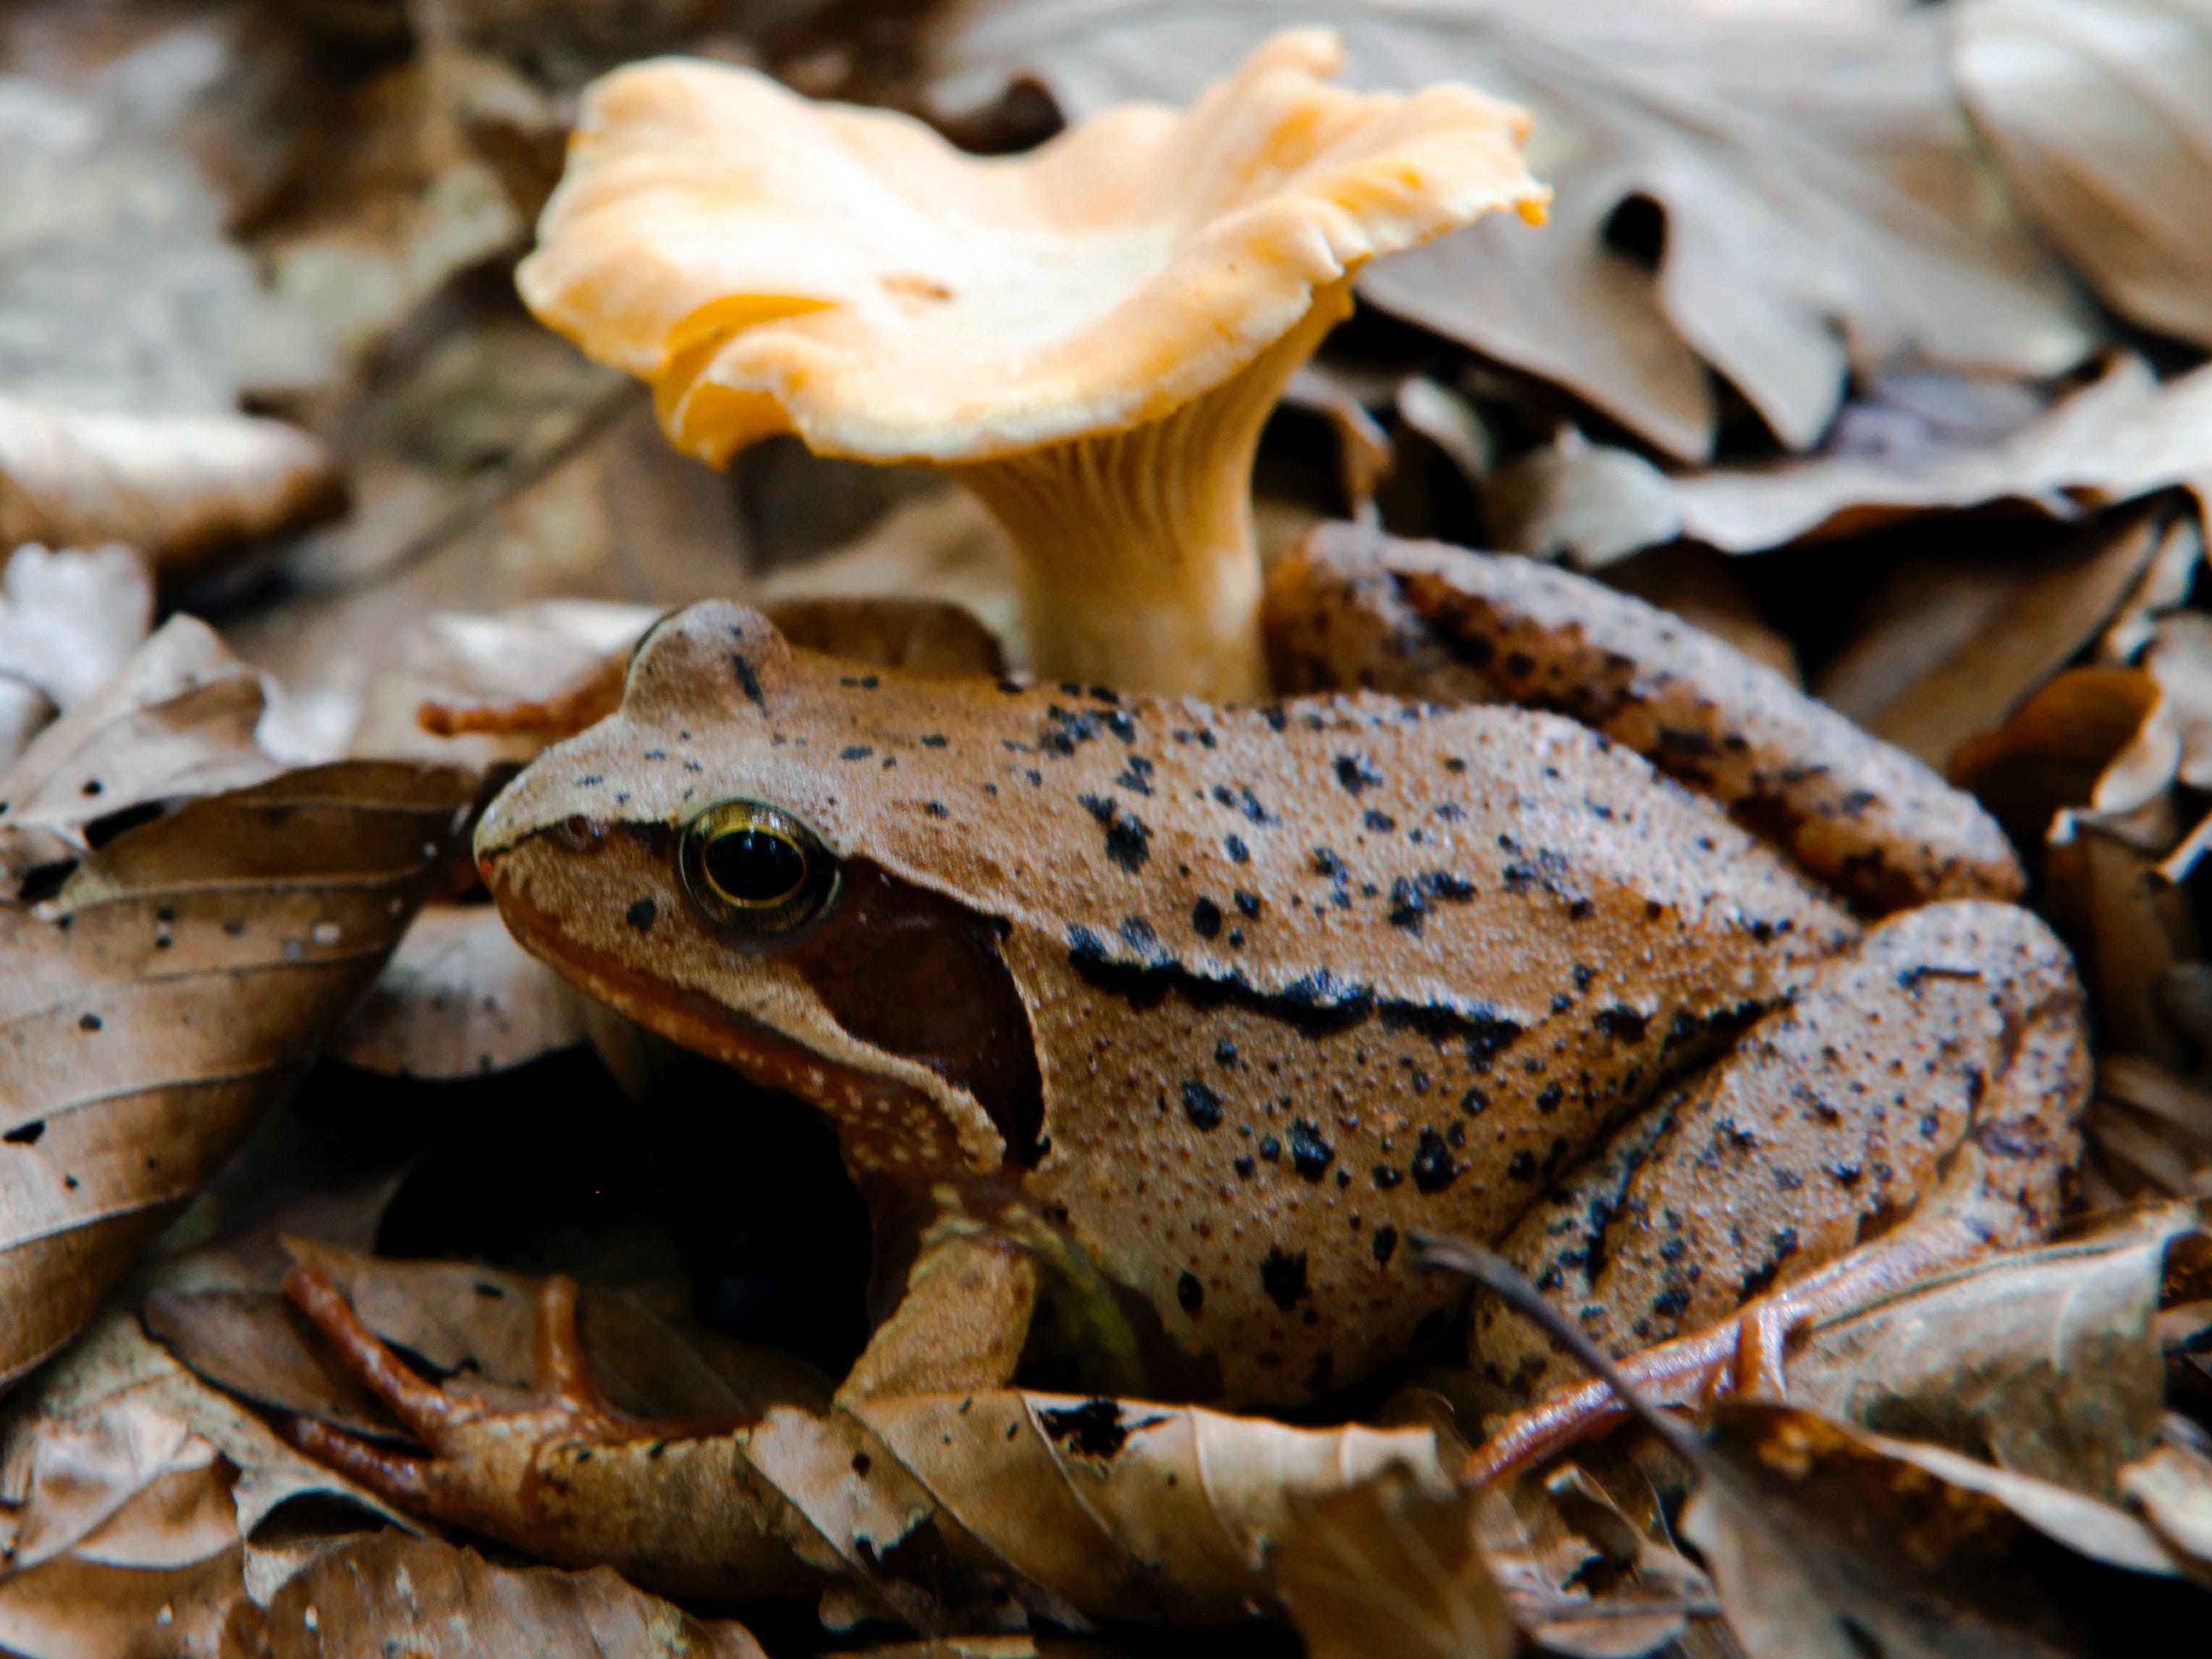 Ein brauner Waldfrosch mit schwarzen Flecken ähnelt den Blättern, auf denen er neben einem braunen Pilz sitzt